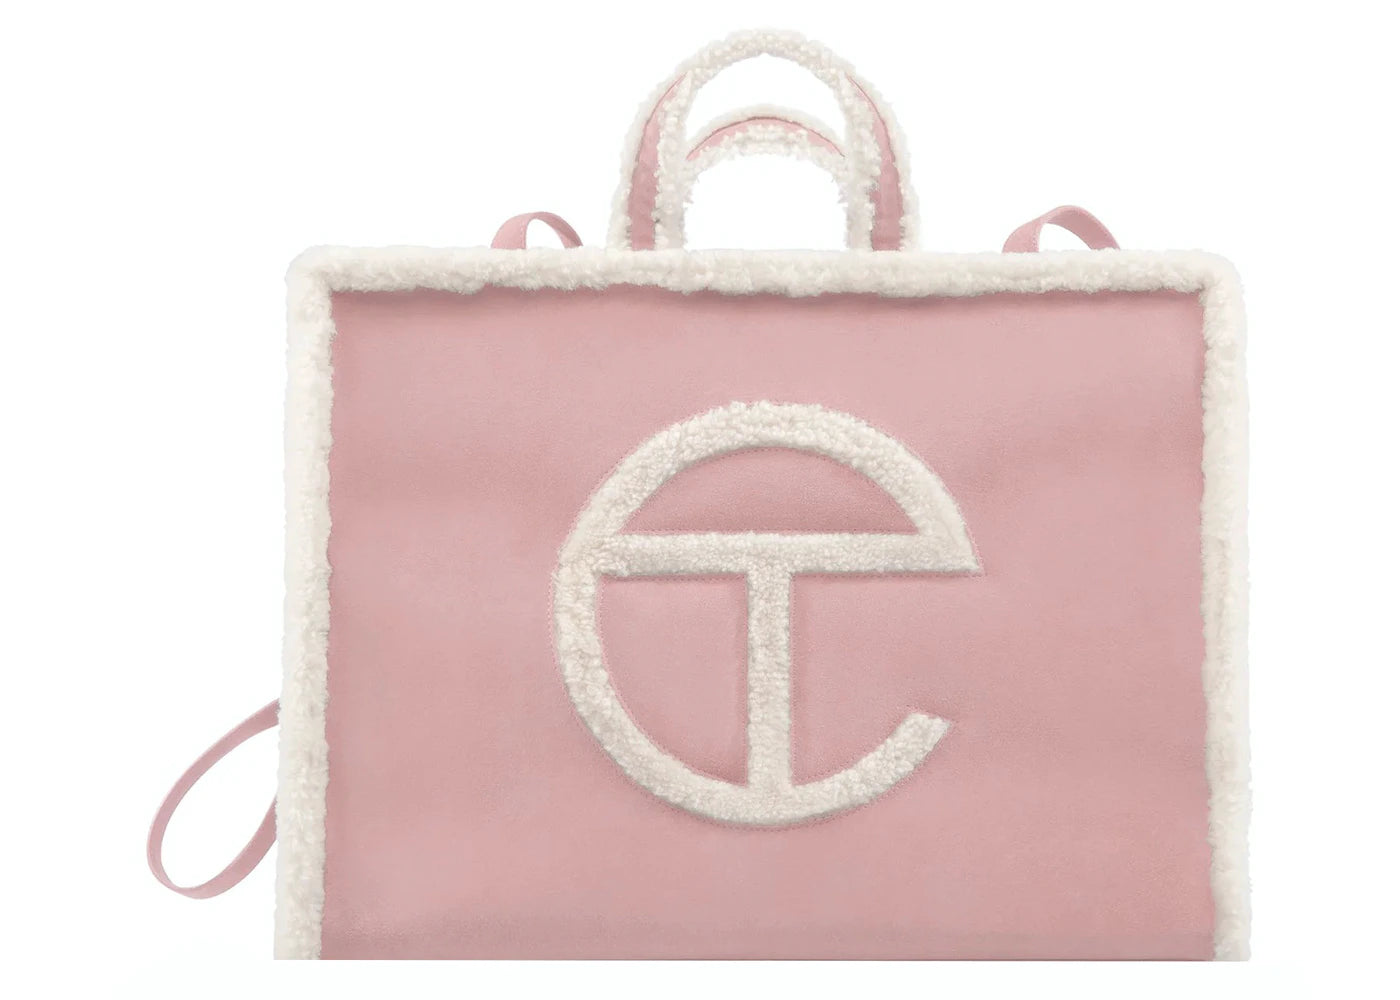 Telfar X Ugg Shopping Bag Large Pink